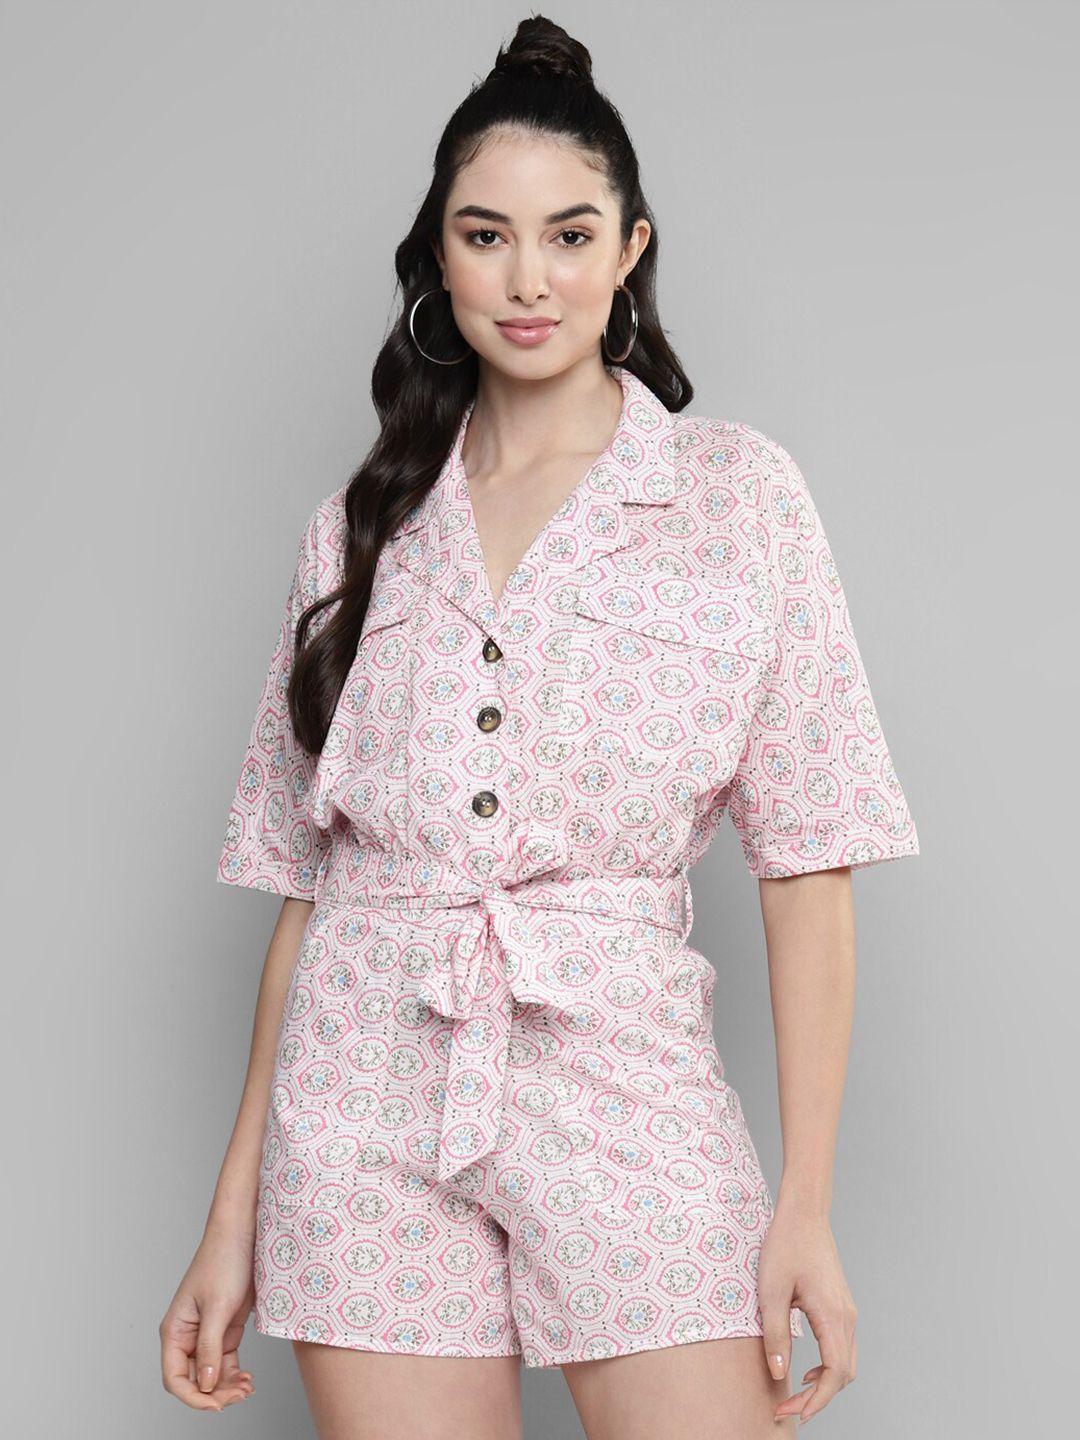 kook n keech white & pink shirt collar printed jumpsuit